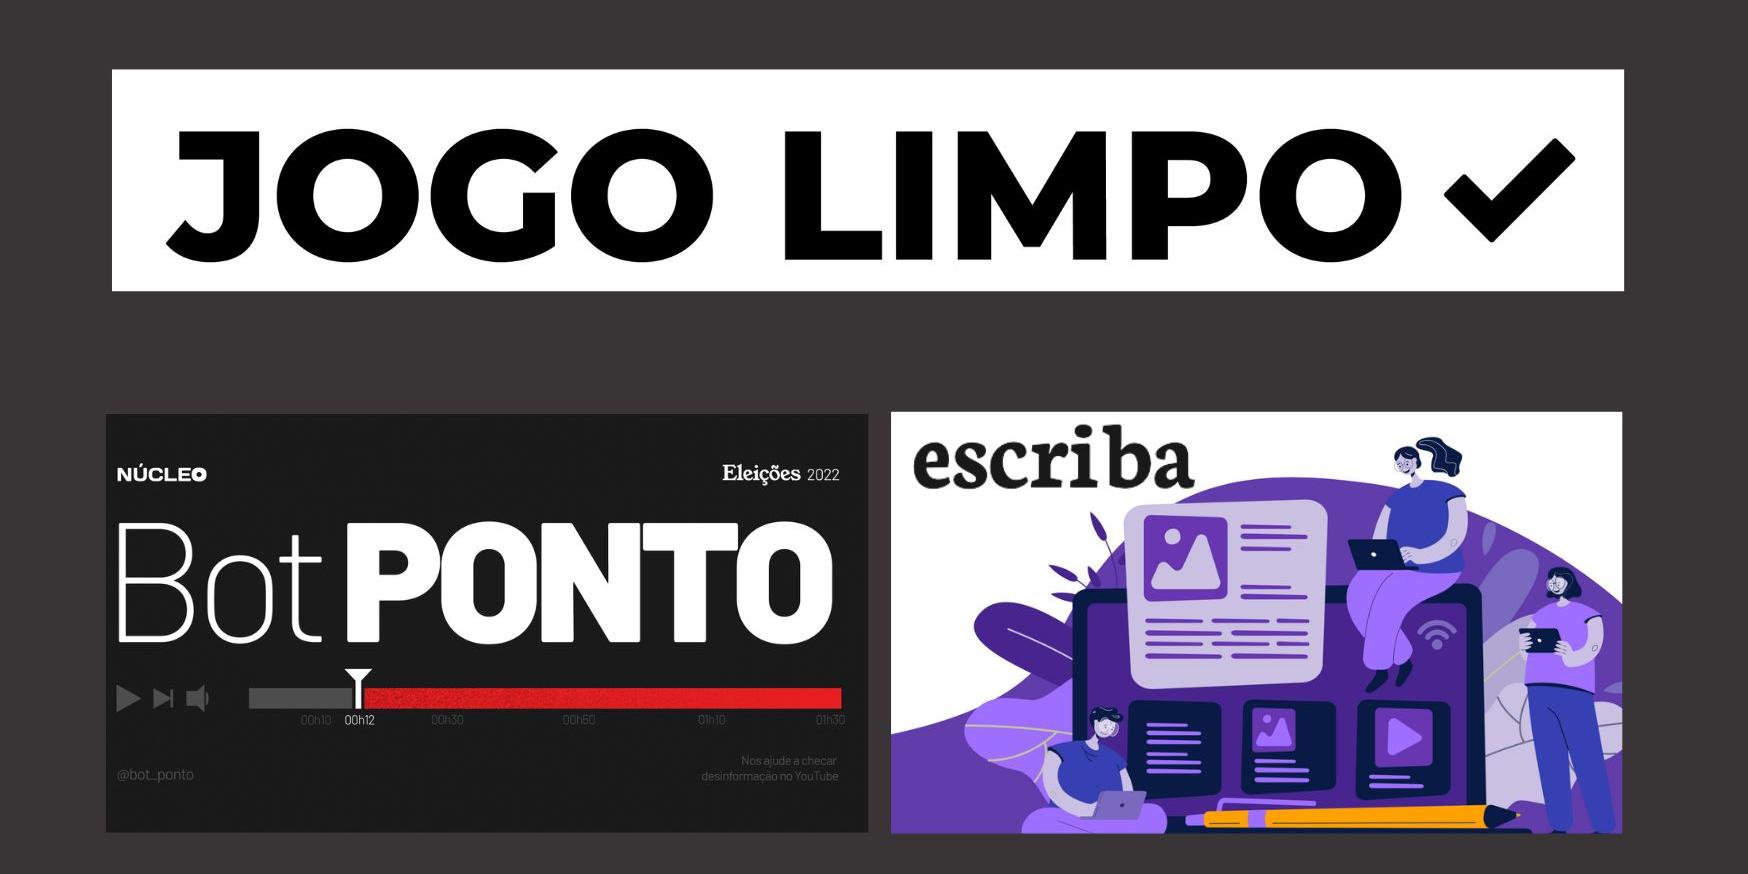 Jogo Limpo, um Programa Para Combater a Desinformação Eleitoral no Brasil  em 2022